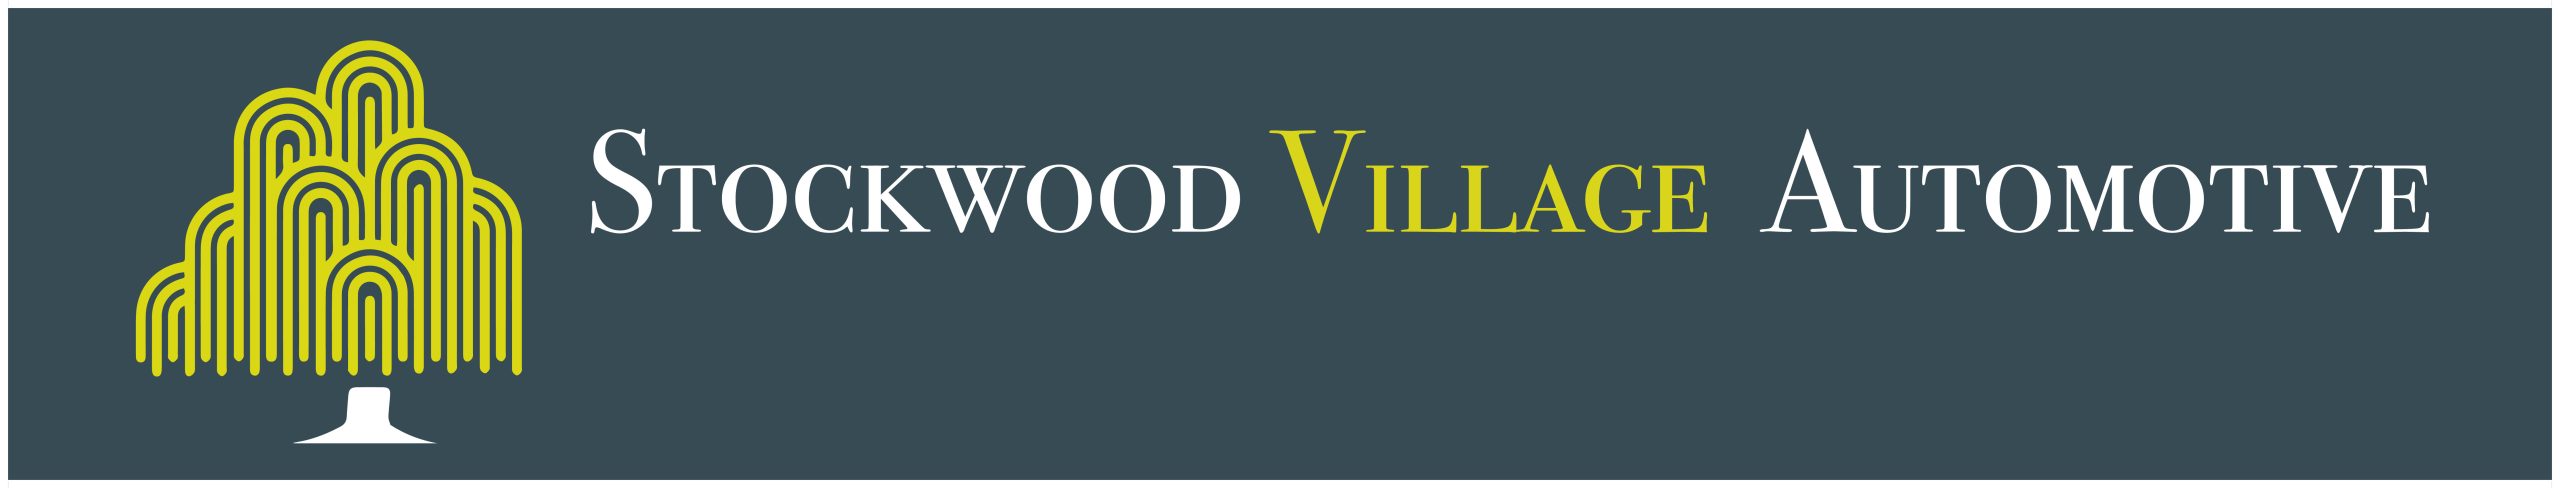 Stockwood Village Automotive Logo